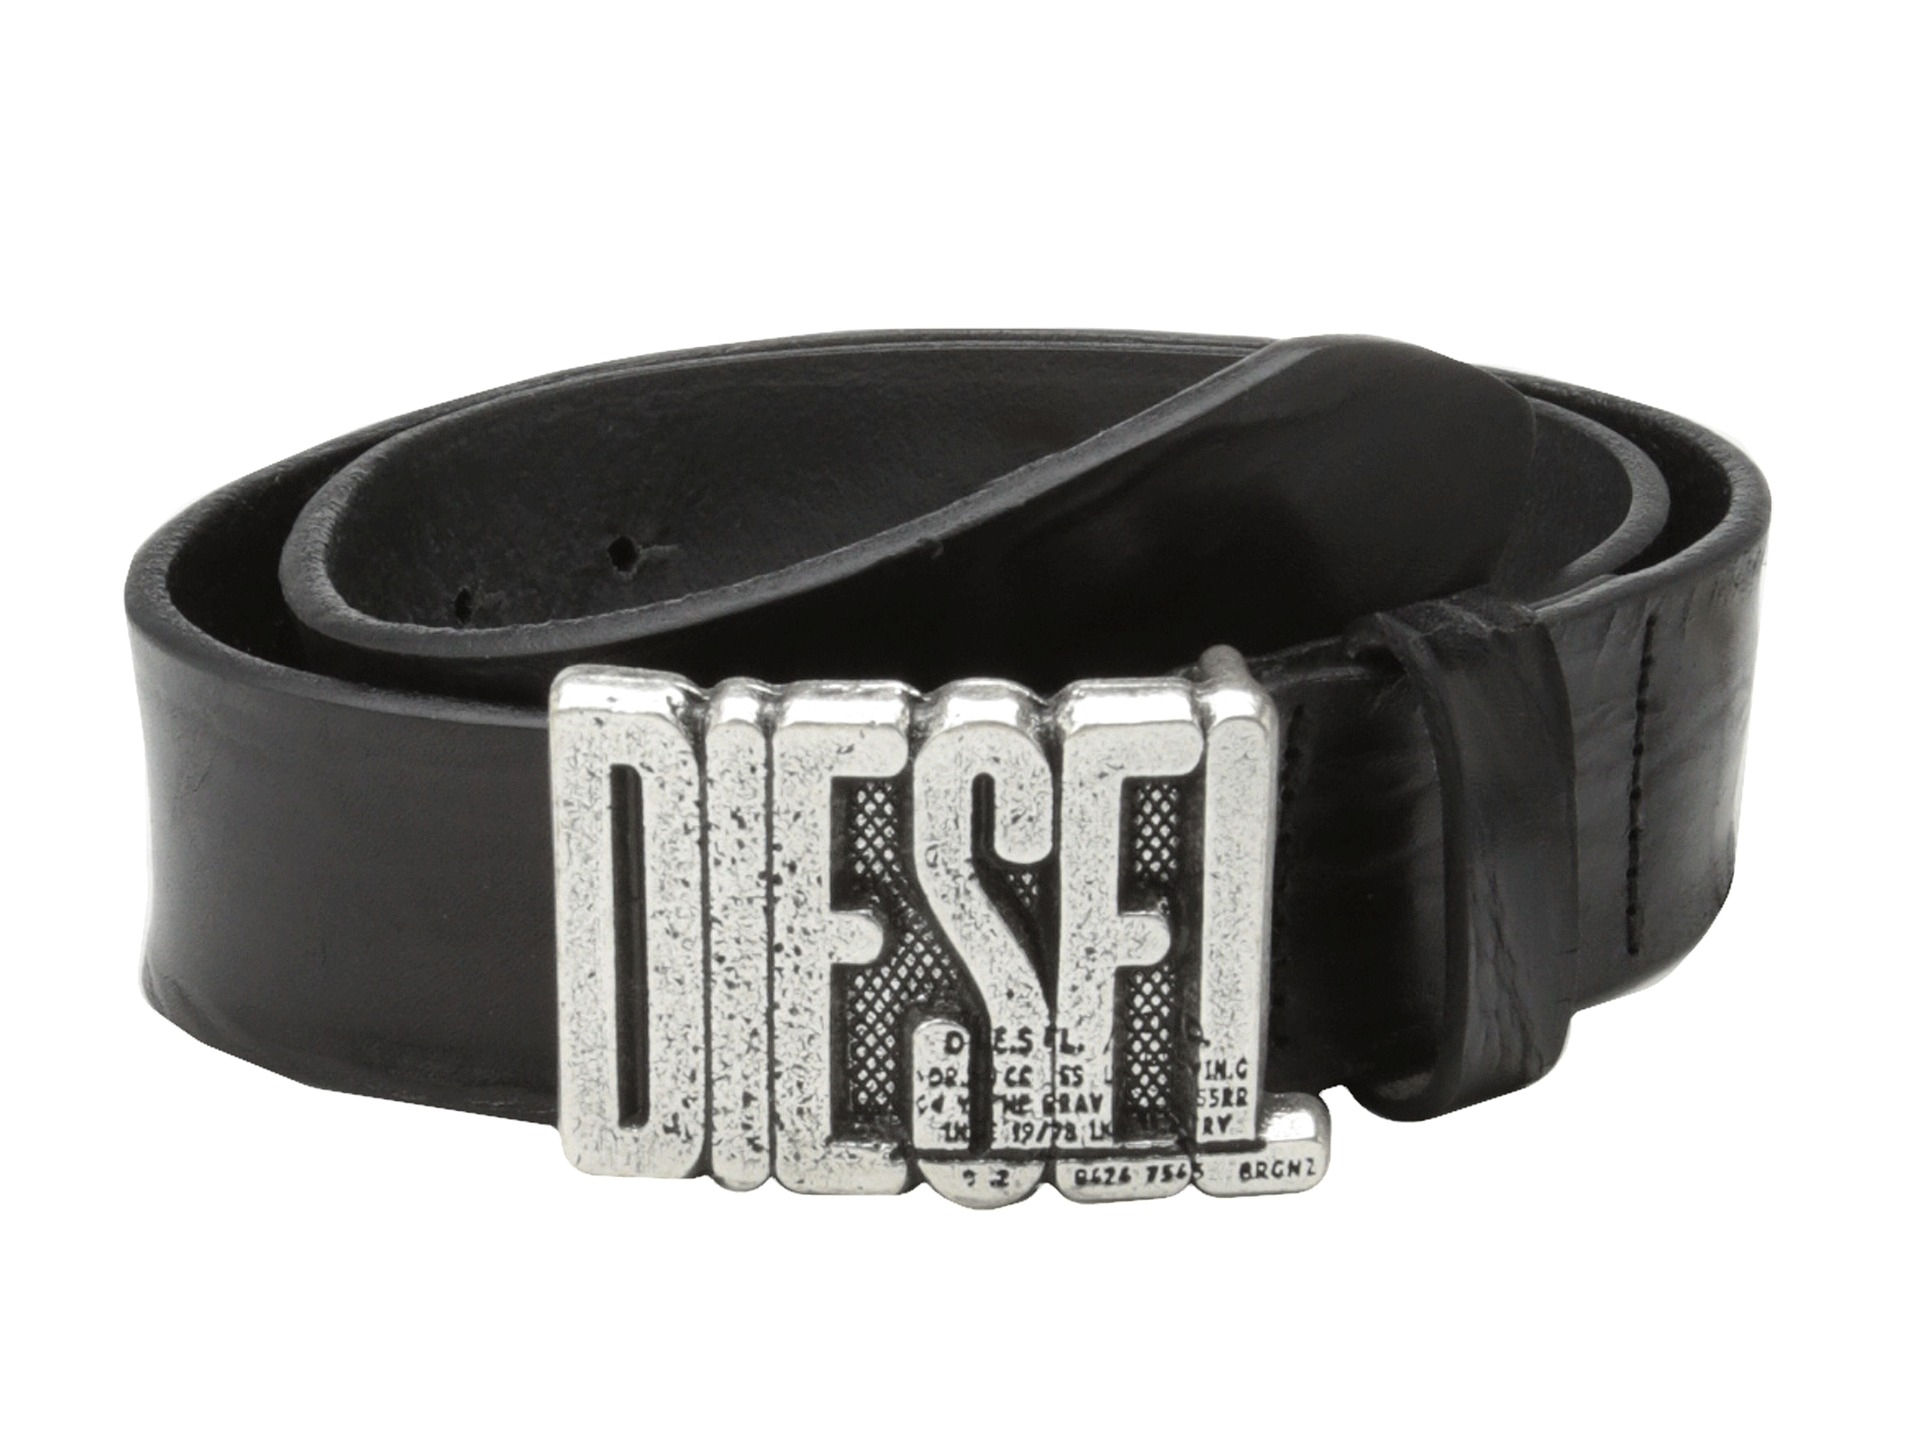 Lyst - Diesel Belkaddur Belt in Black for Men